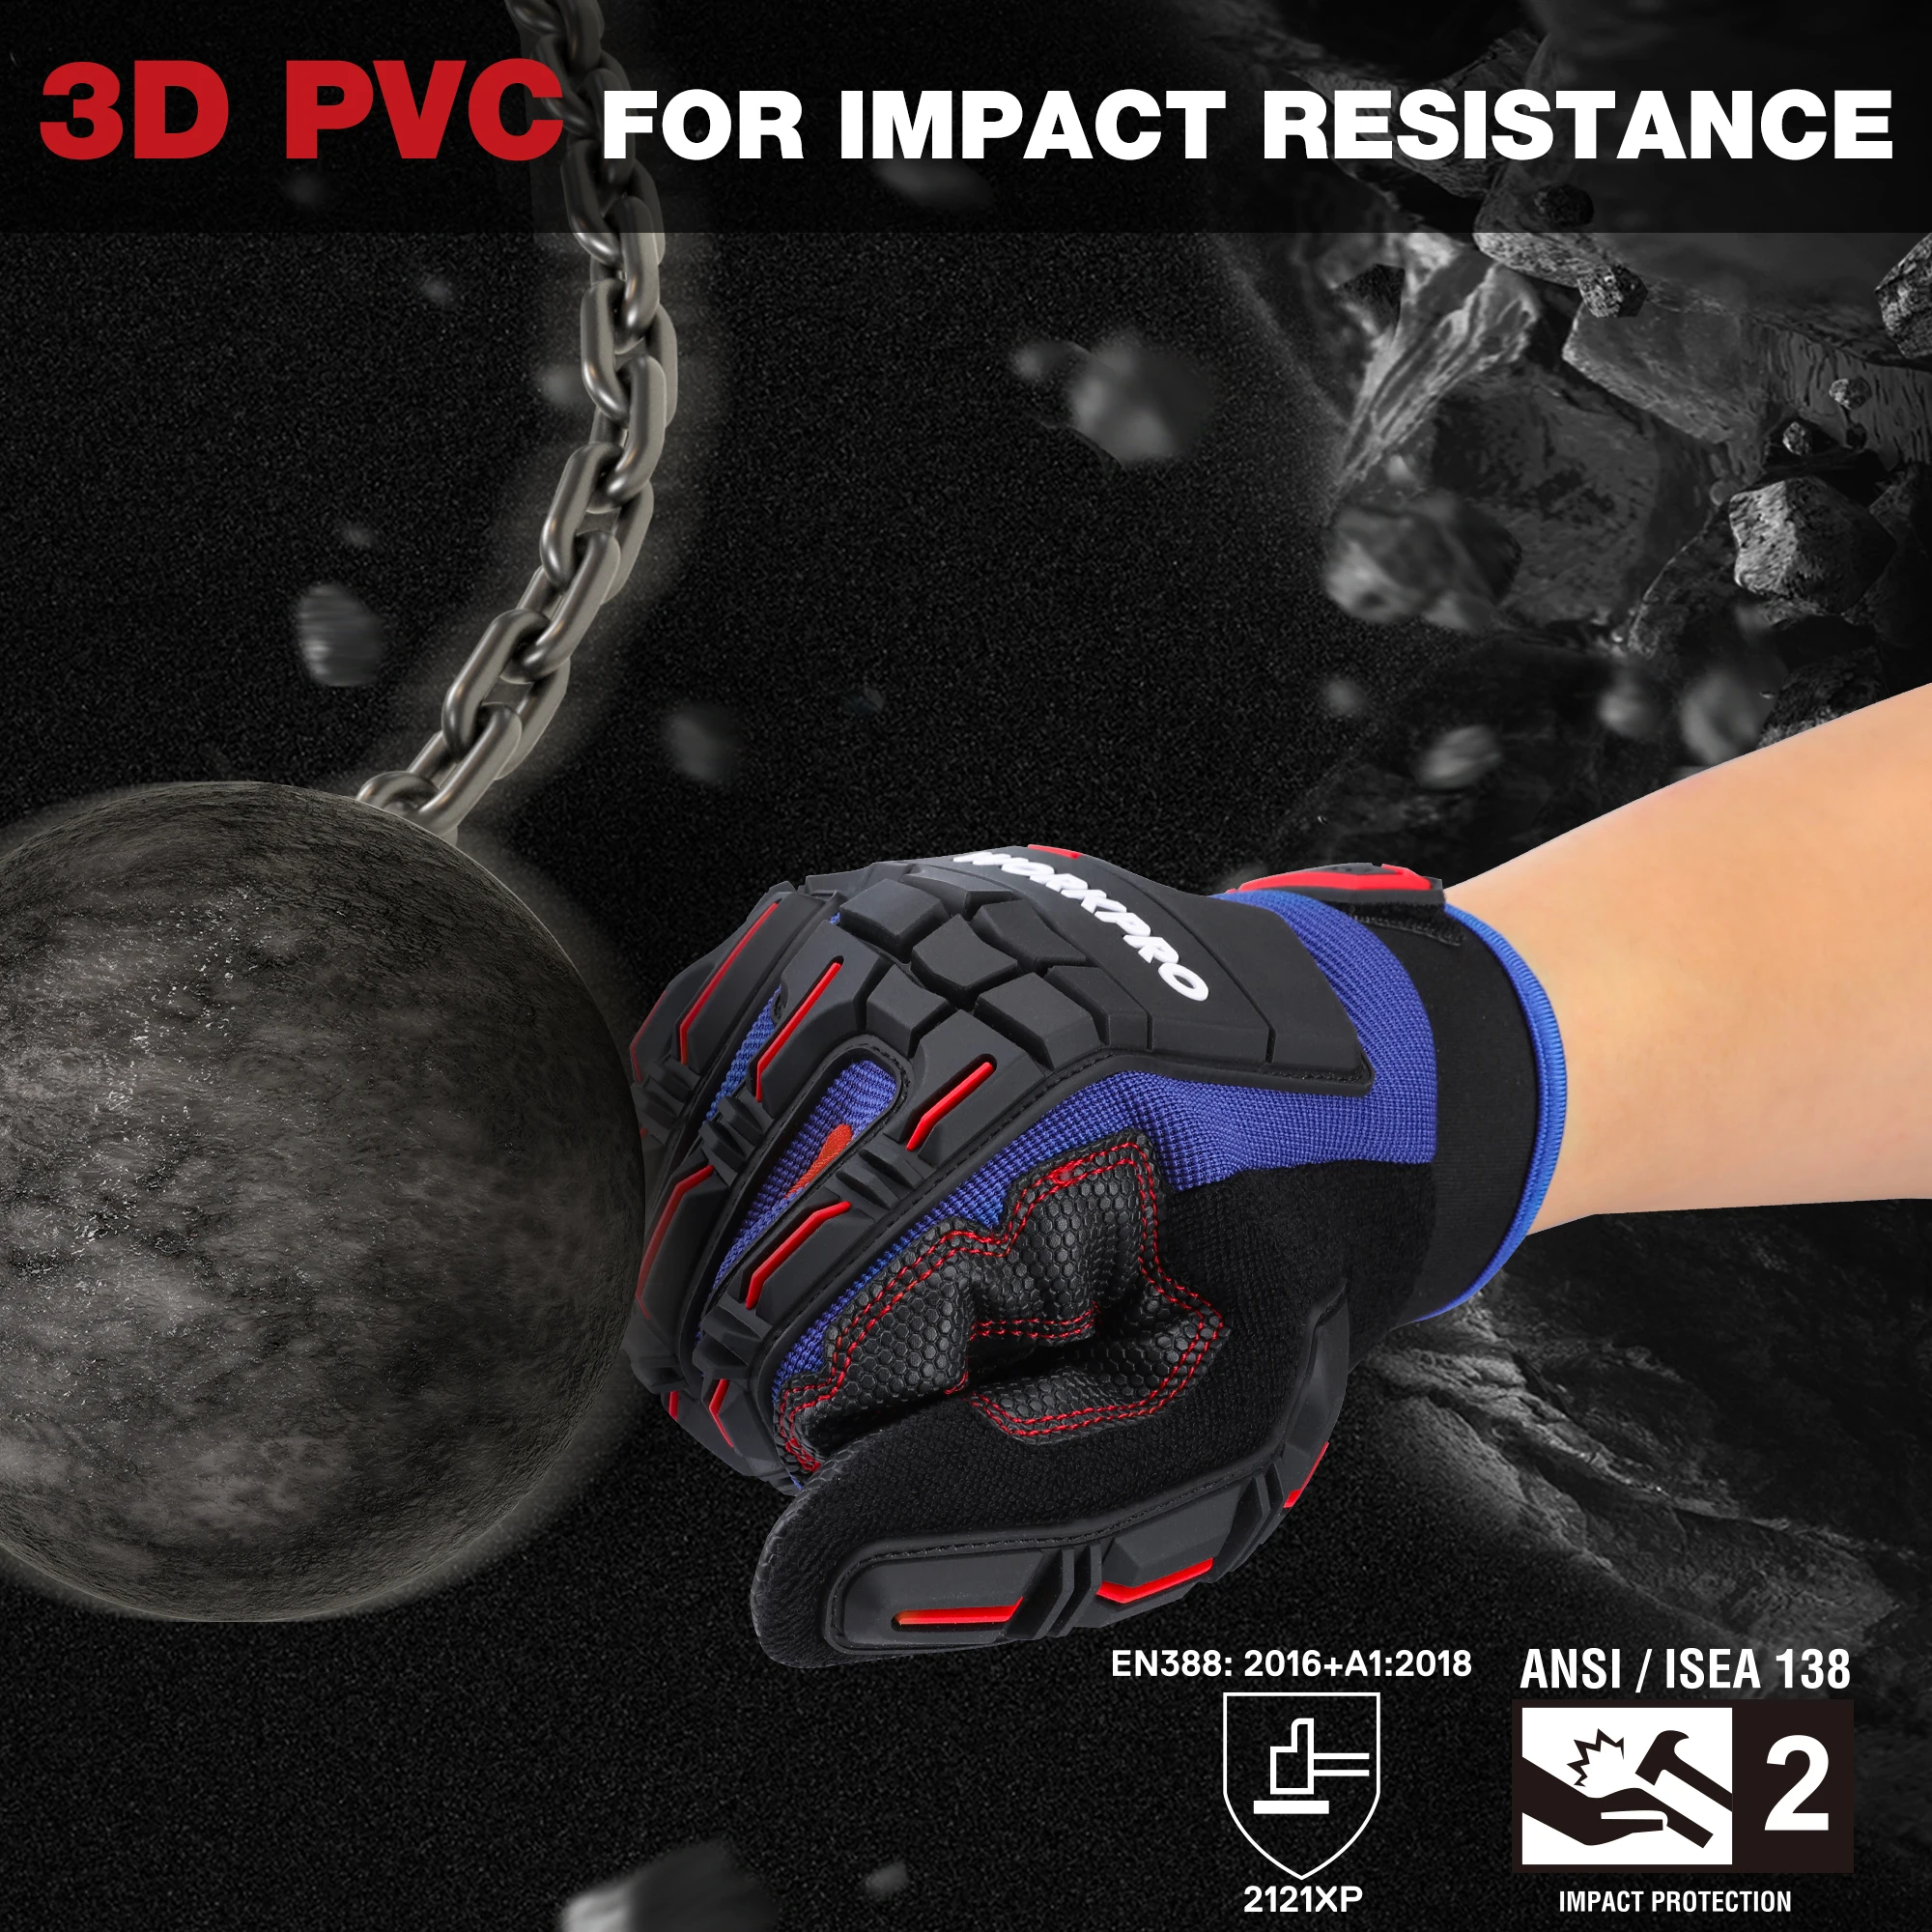 WORKPRO-guantes de trabajo de alta resistencia, guante de dedo completo con pantalla táctil, protección contra impactos, manoplas tácticas del ejército militar para disparar Paintball